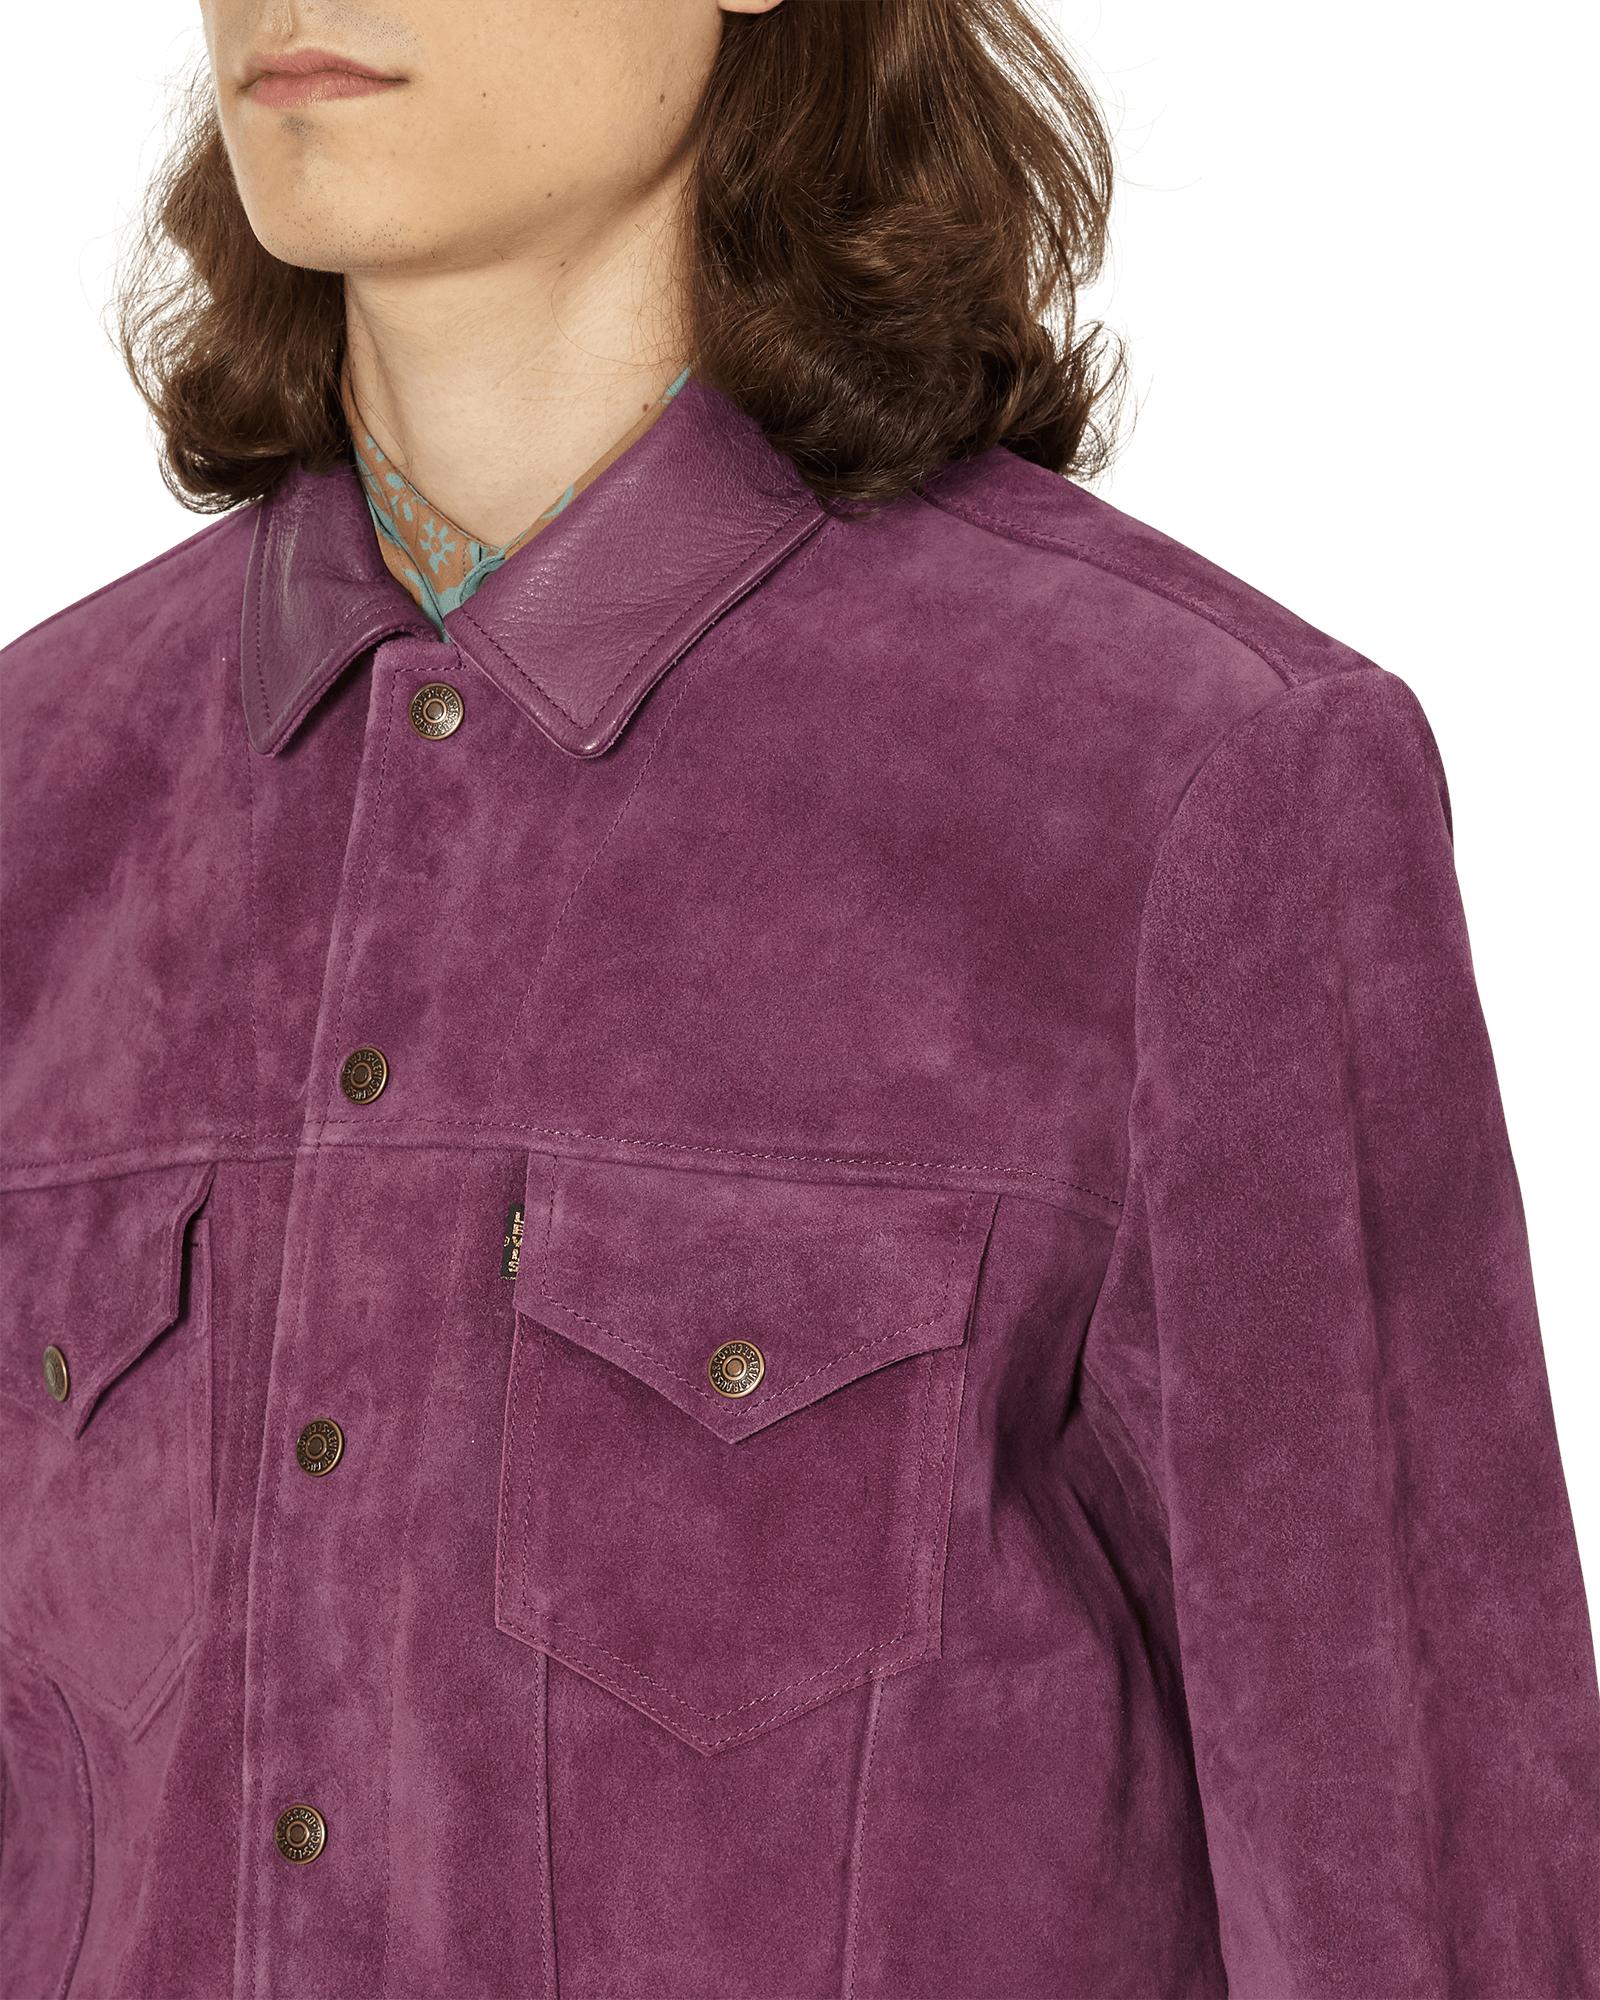 Levi's - 90's Trucker Jacket in Light Purple Garment Dye